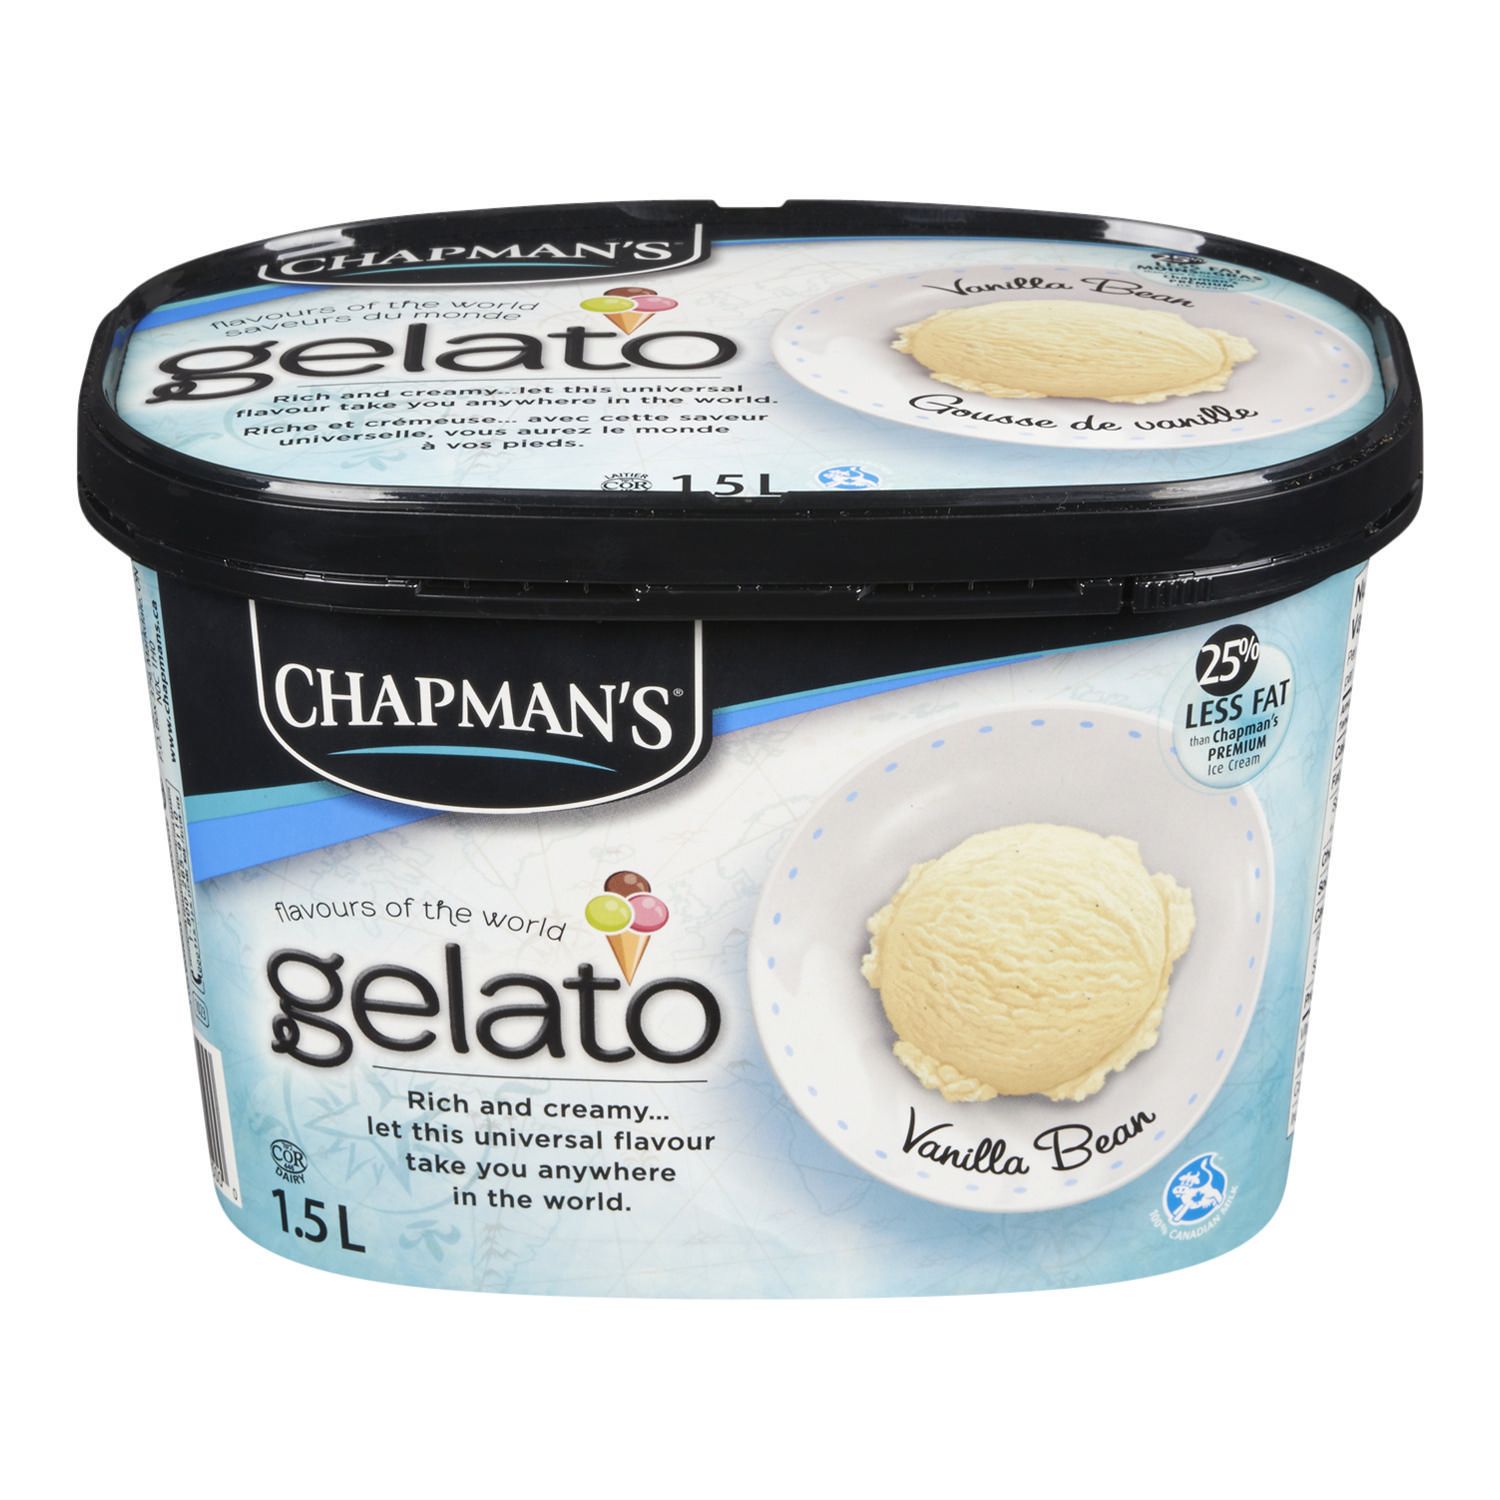 Chapman's - Vanilla Ice Cream